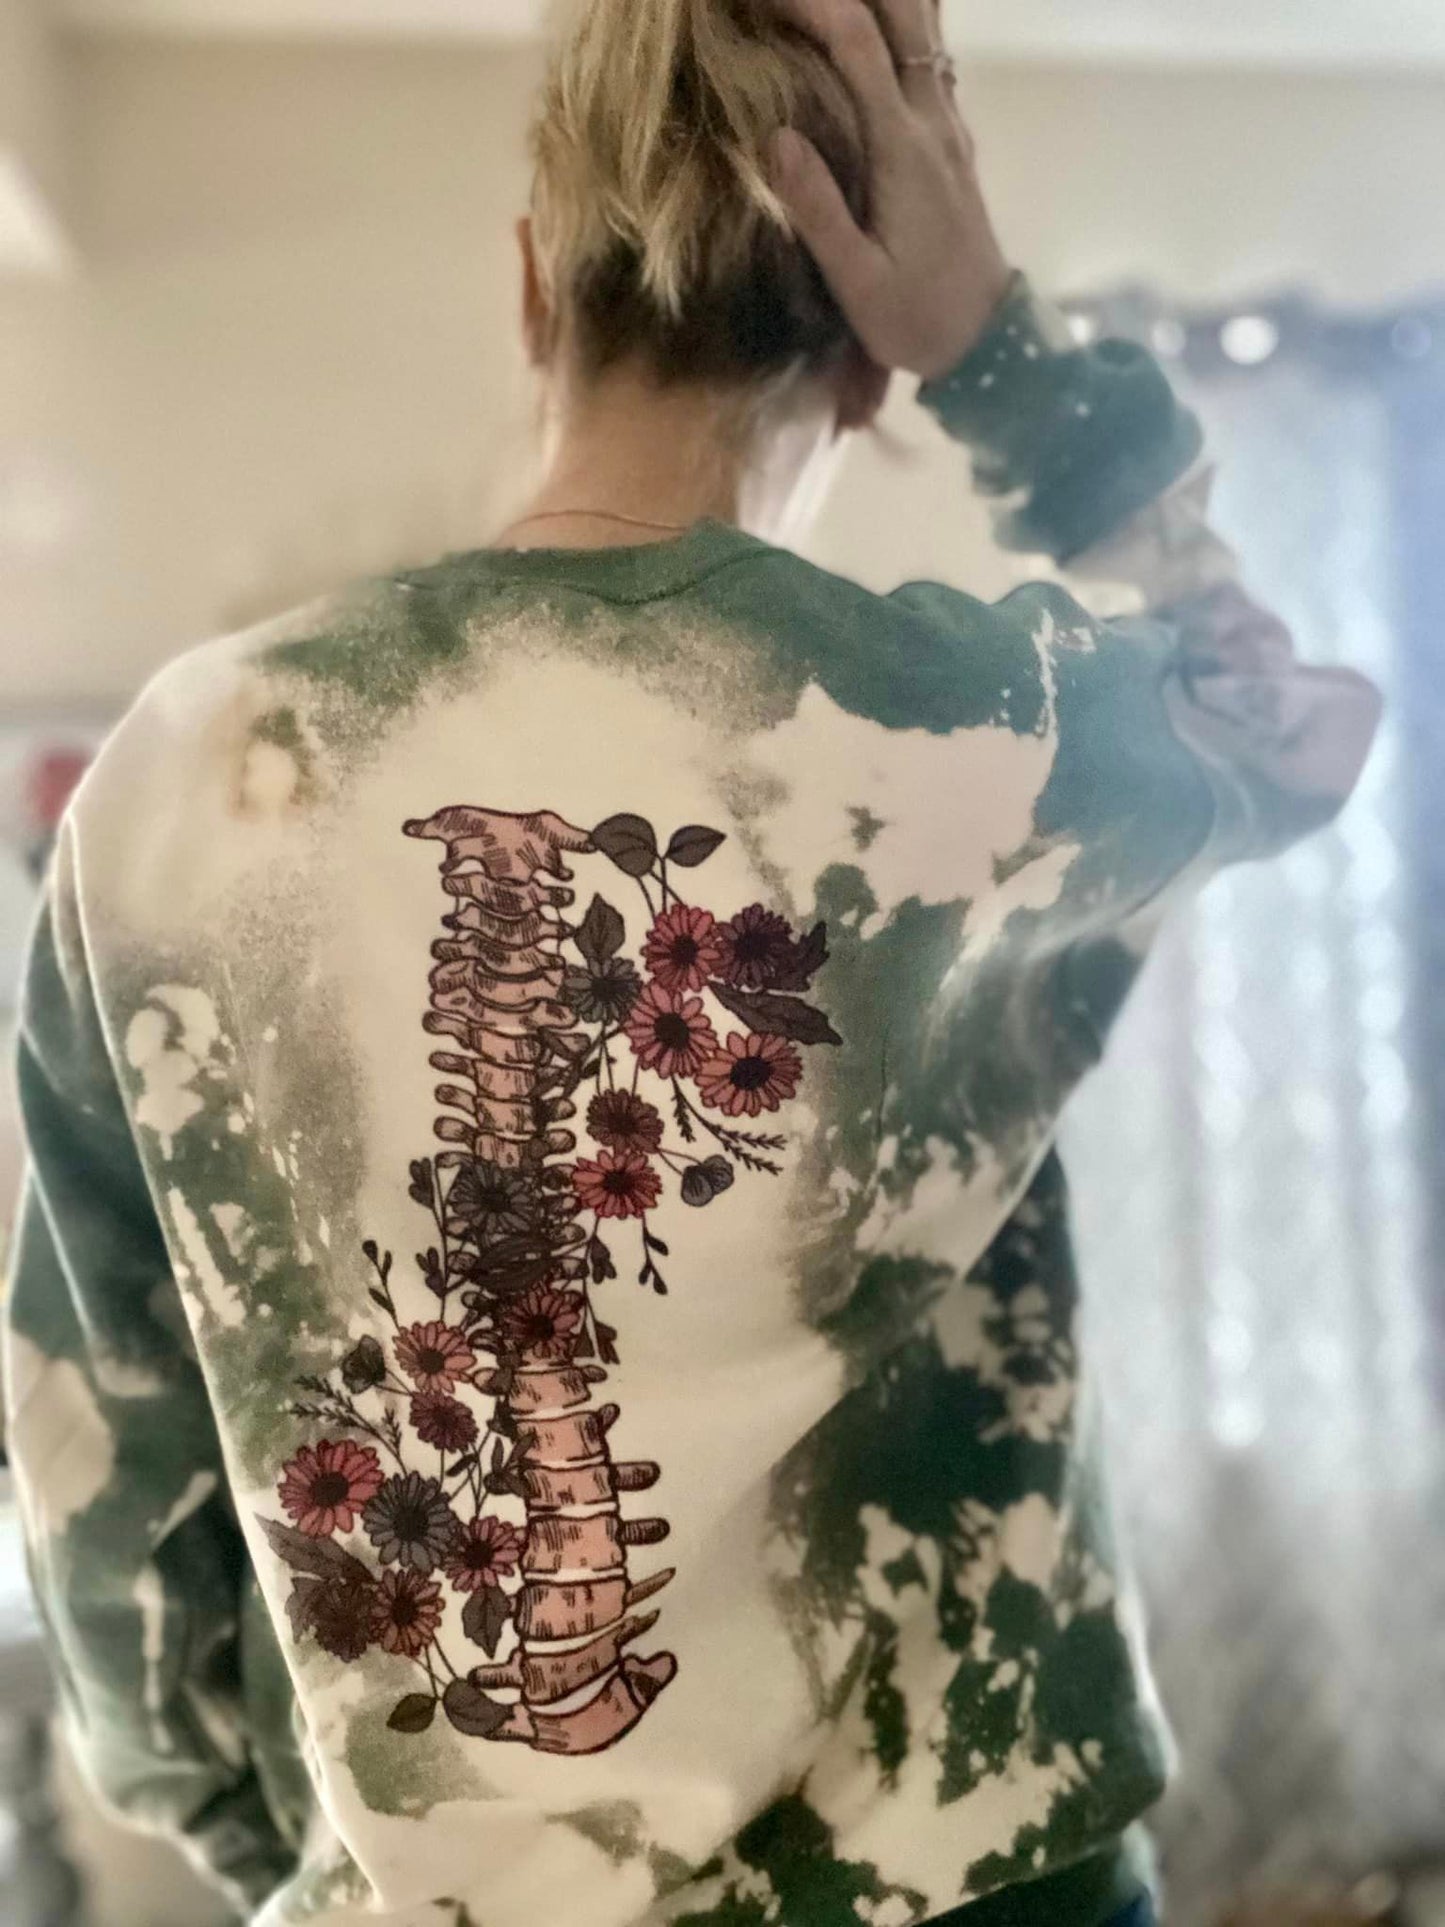 Metamorphosis sweatshirt